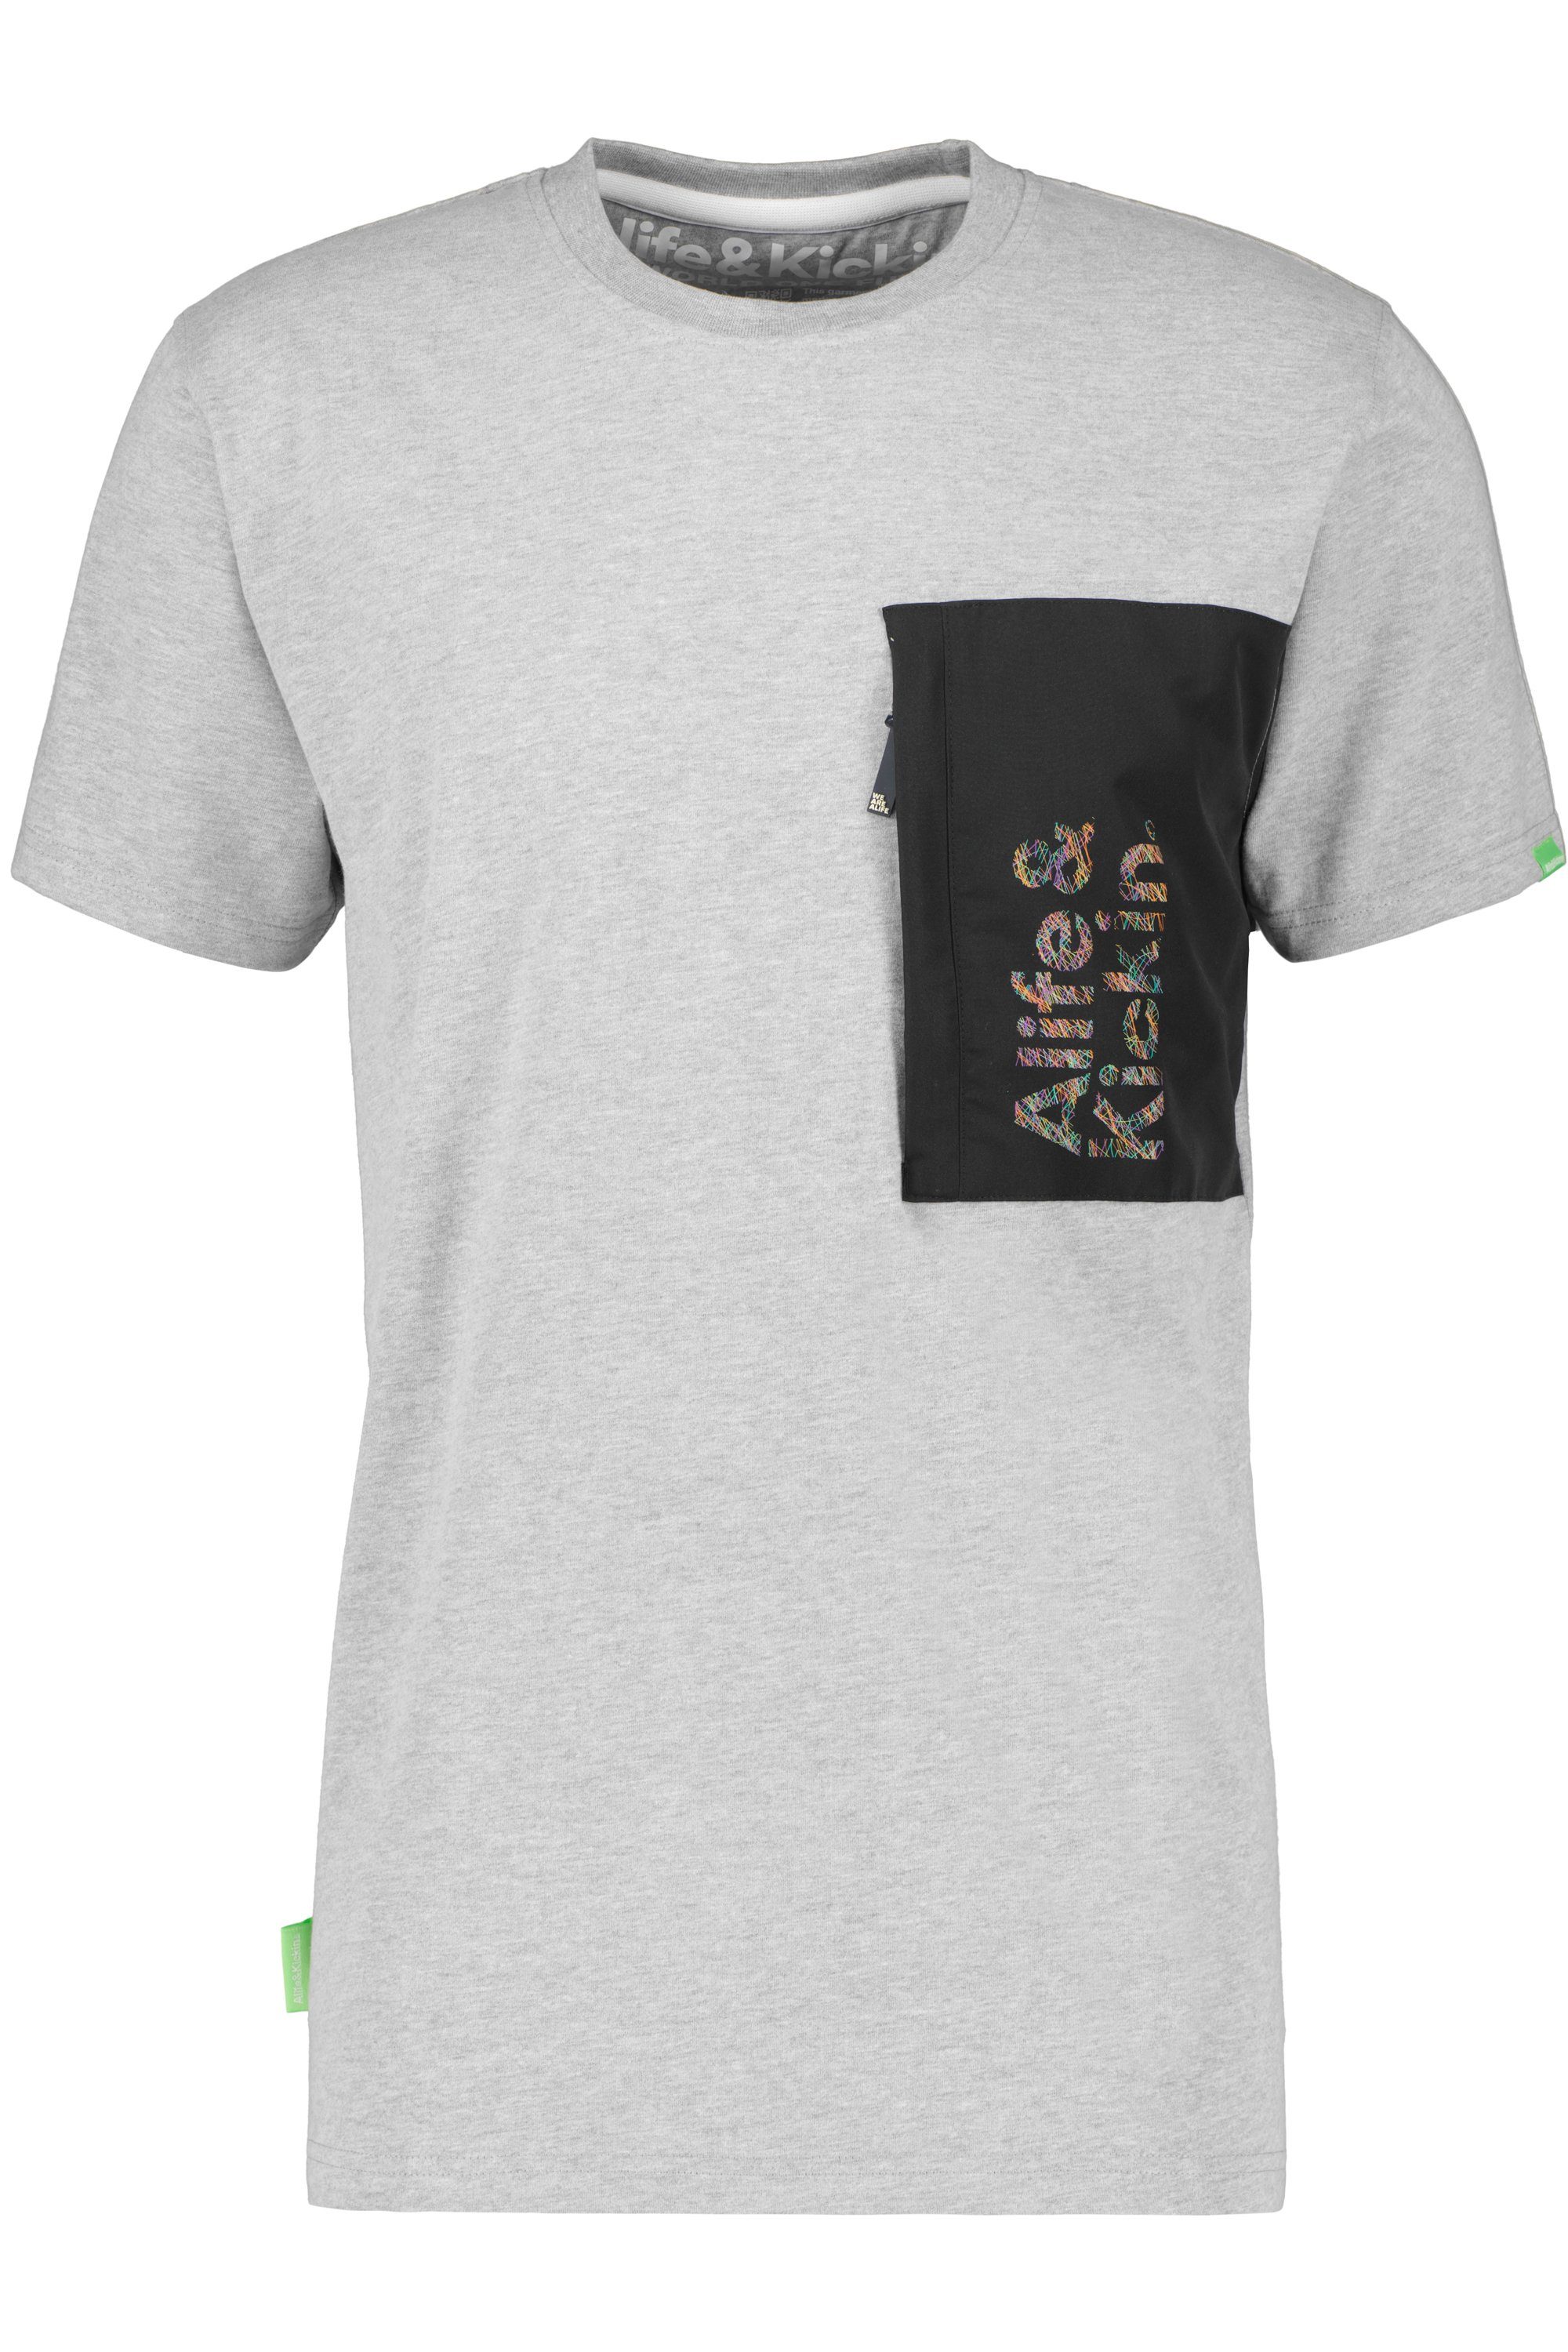 Shirt Herren T-Shirt & RossAK steal Alife T-Shirt Kickin